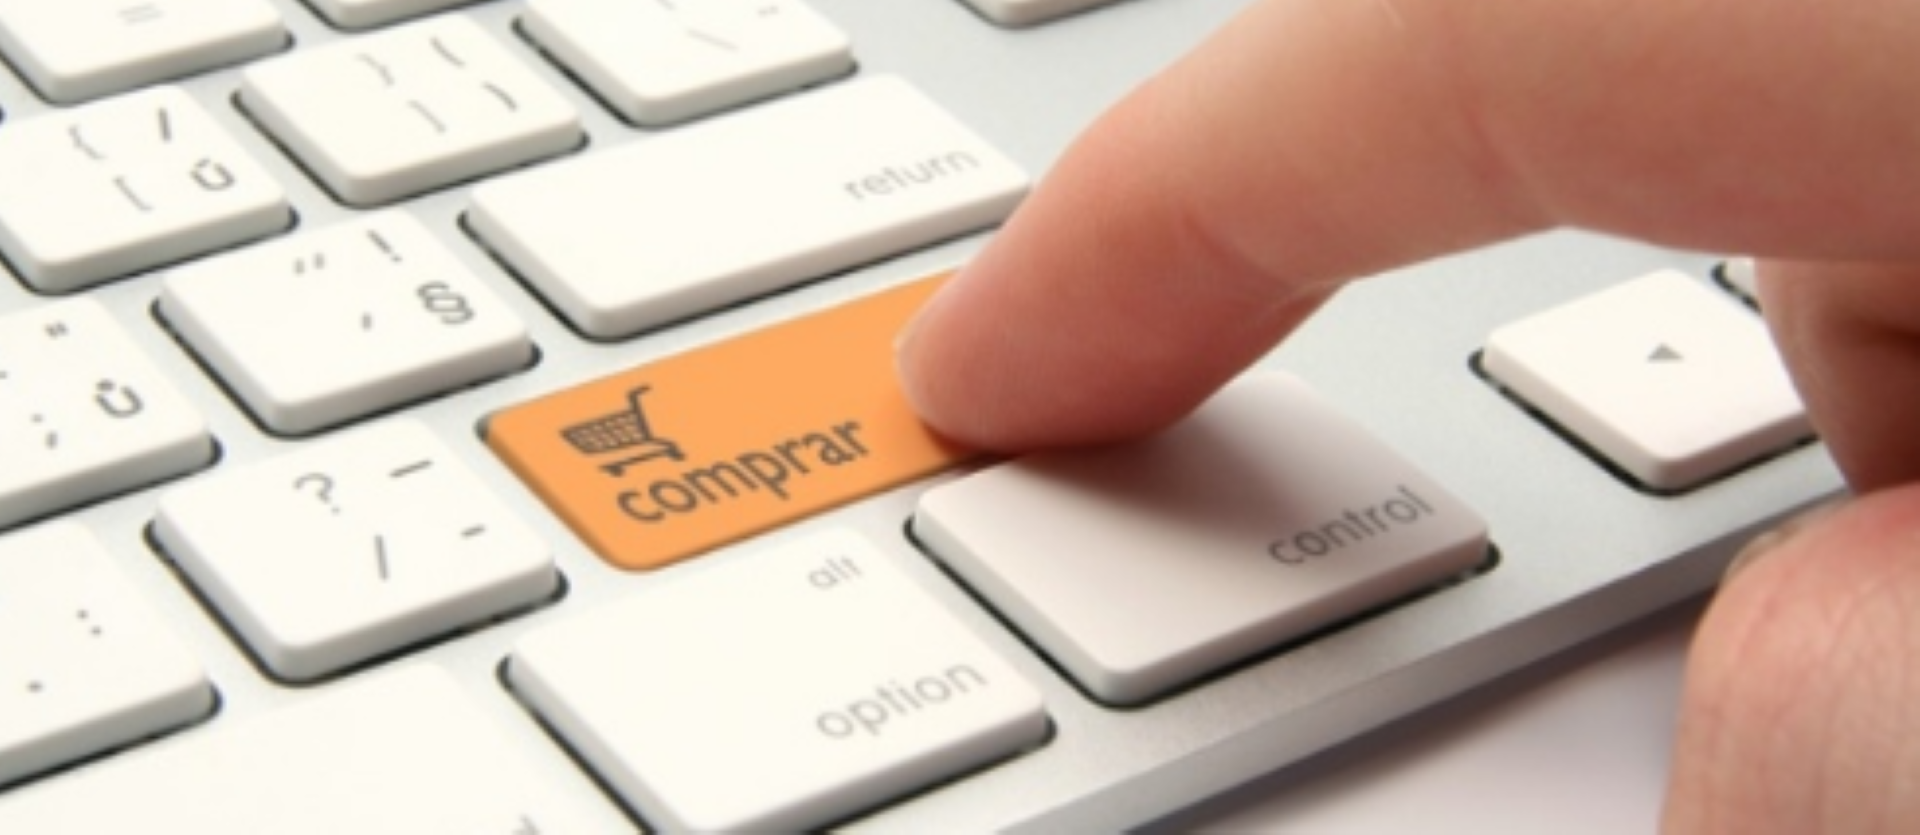 Condusef alerta sobre nuevo tipo de fraude en comercio electrónico